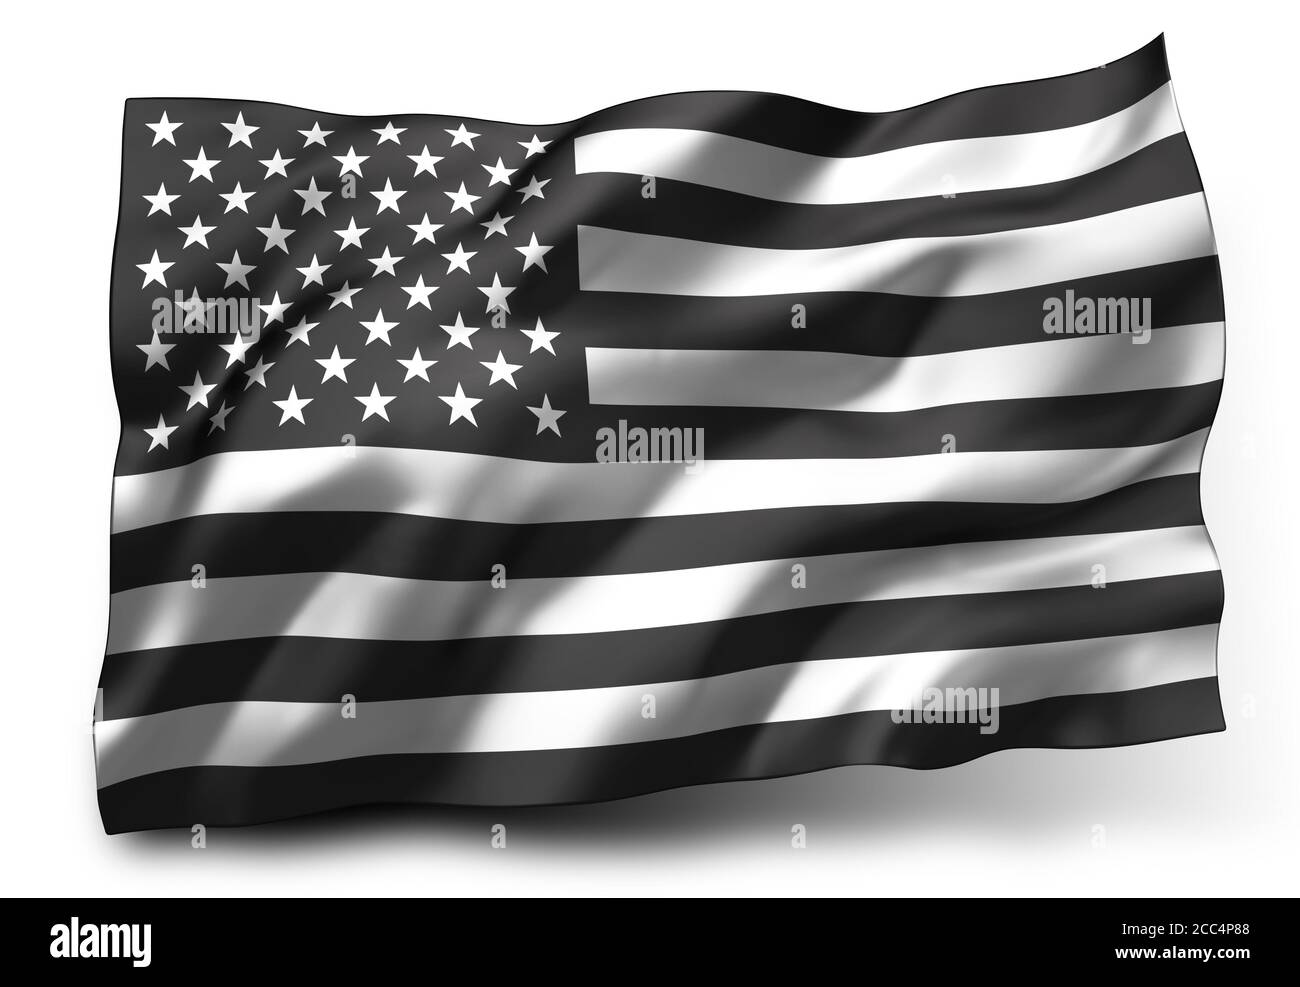 Vidas negras importan bandera soplando en el viento. Bandera de vuelo de EE.UU. En blanco y negro, aislada sobre fondo blanco. Ilustración 3D. Foto de stock